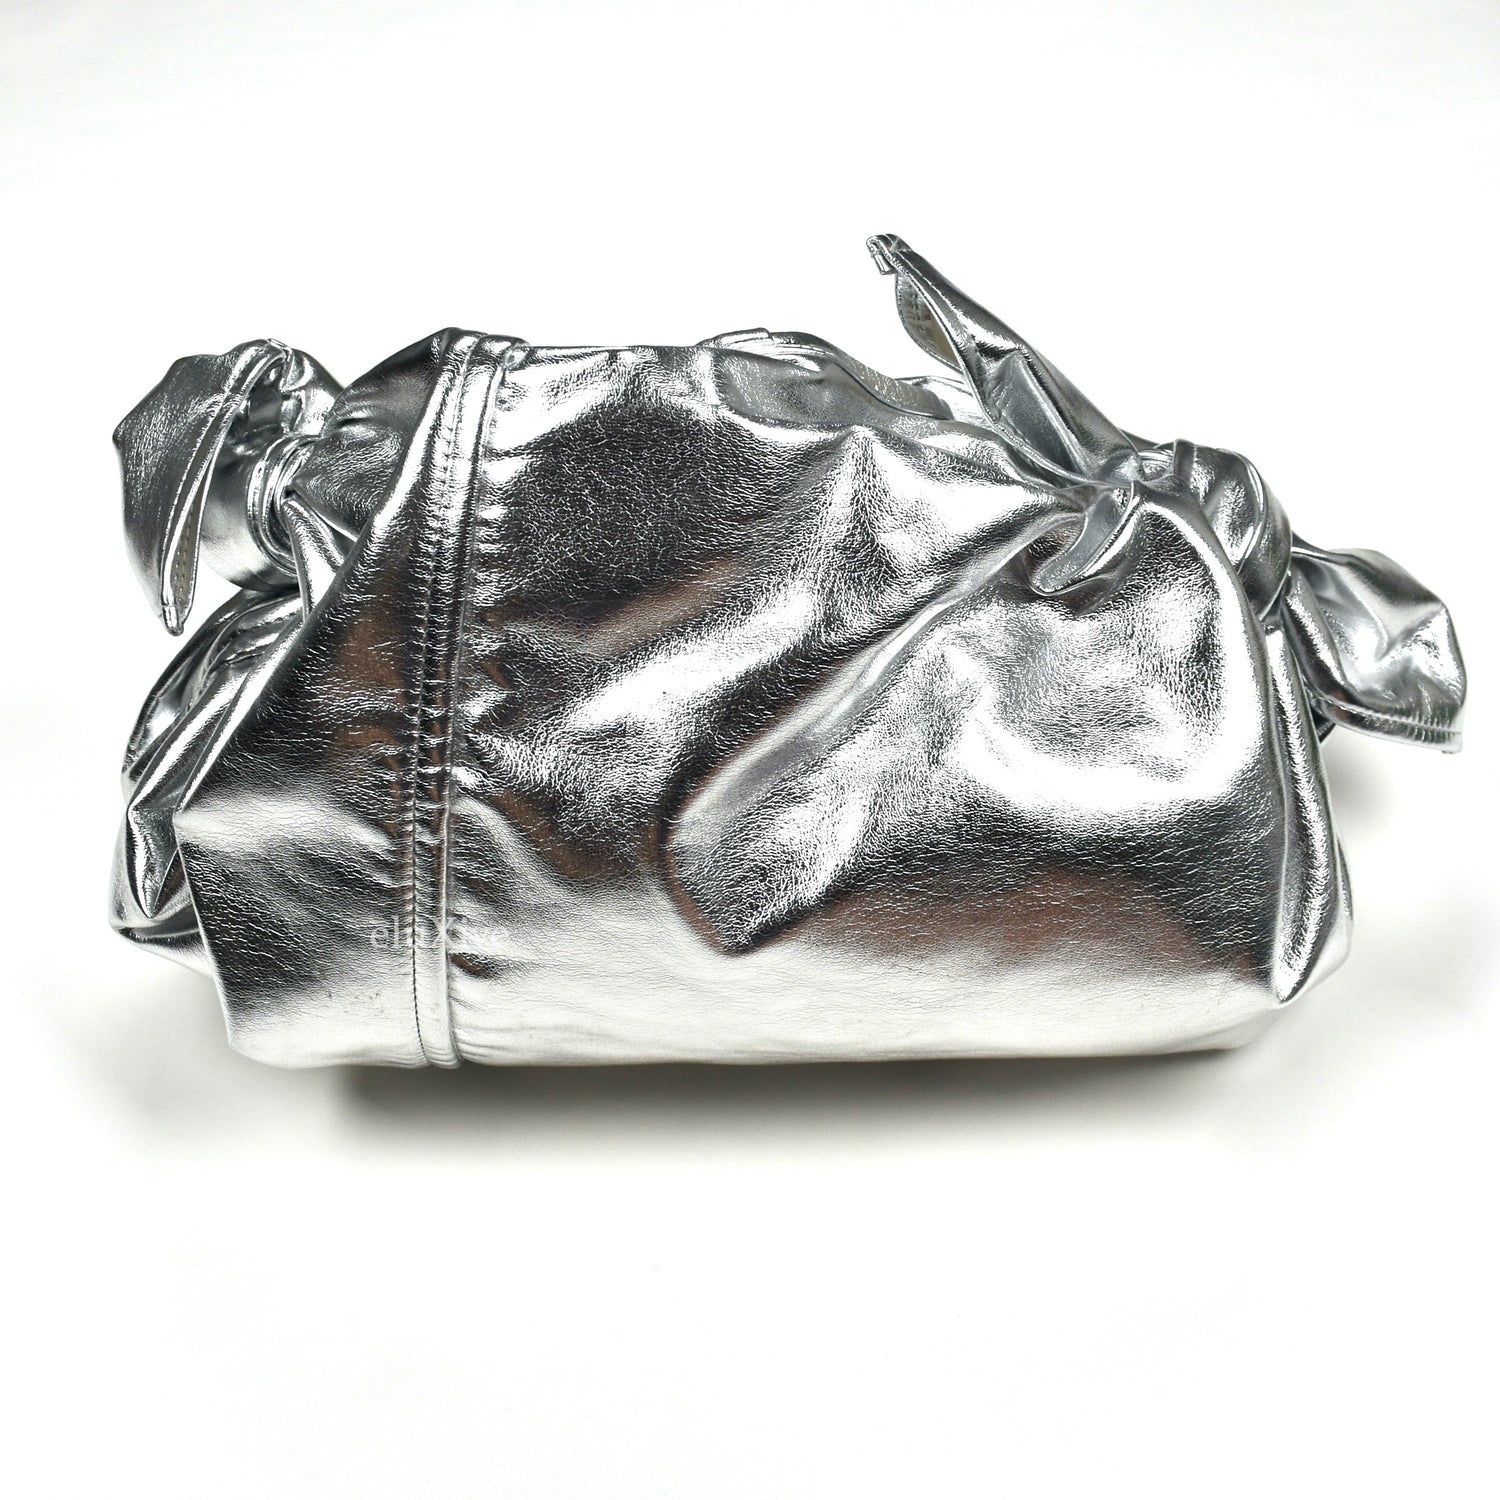 Comme des Garcons Authenticated Handbag